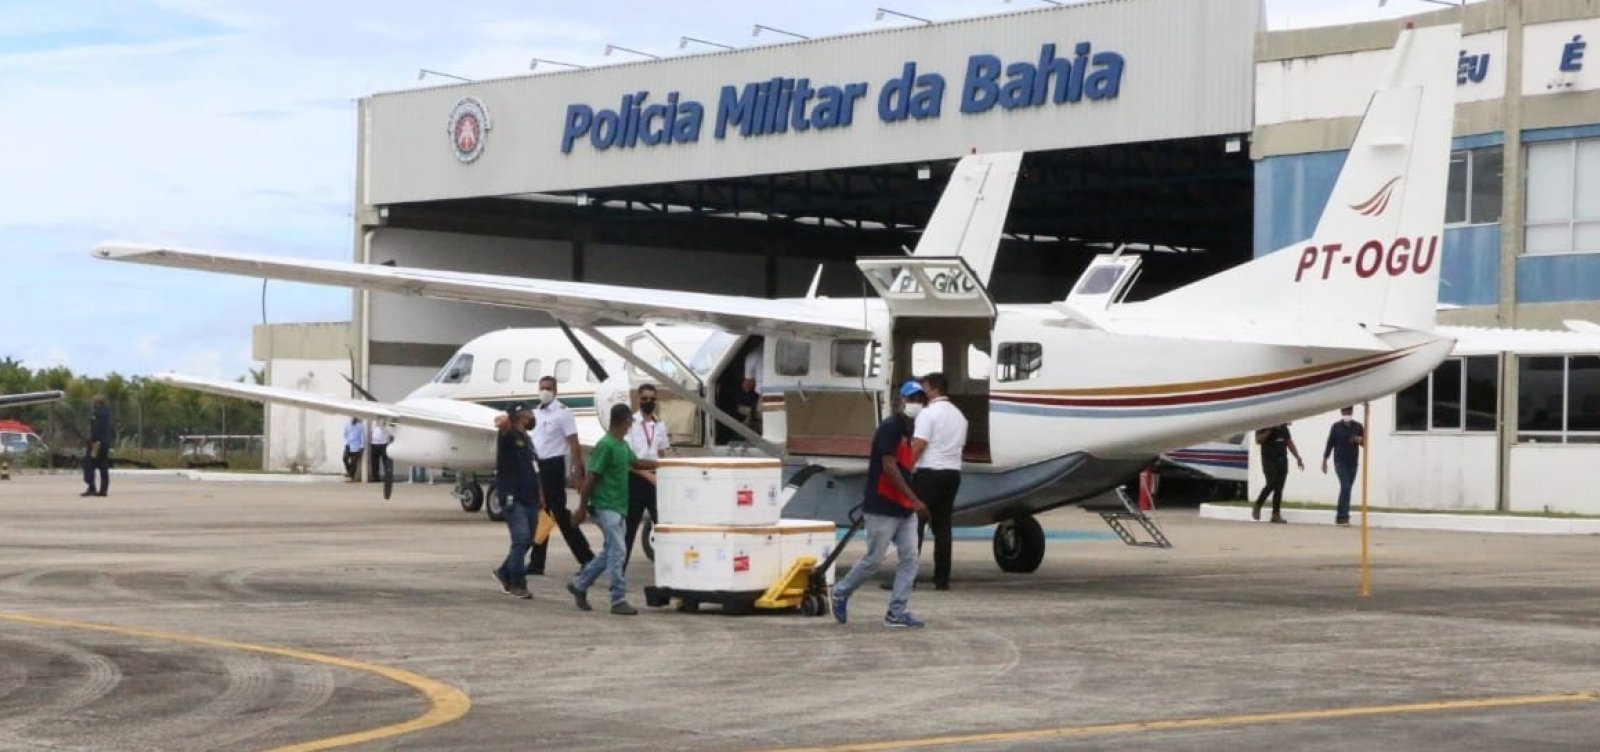 Aeronaves fazem distribuição de vacinas pelo interior da Bahia